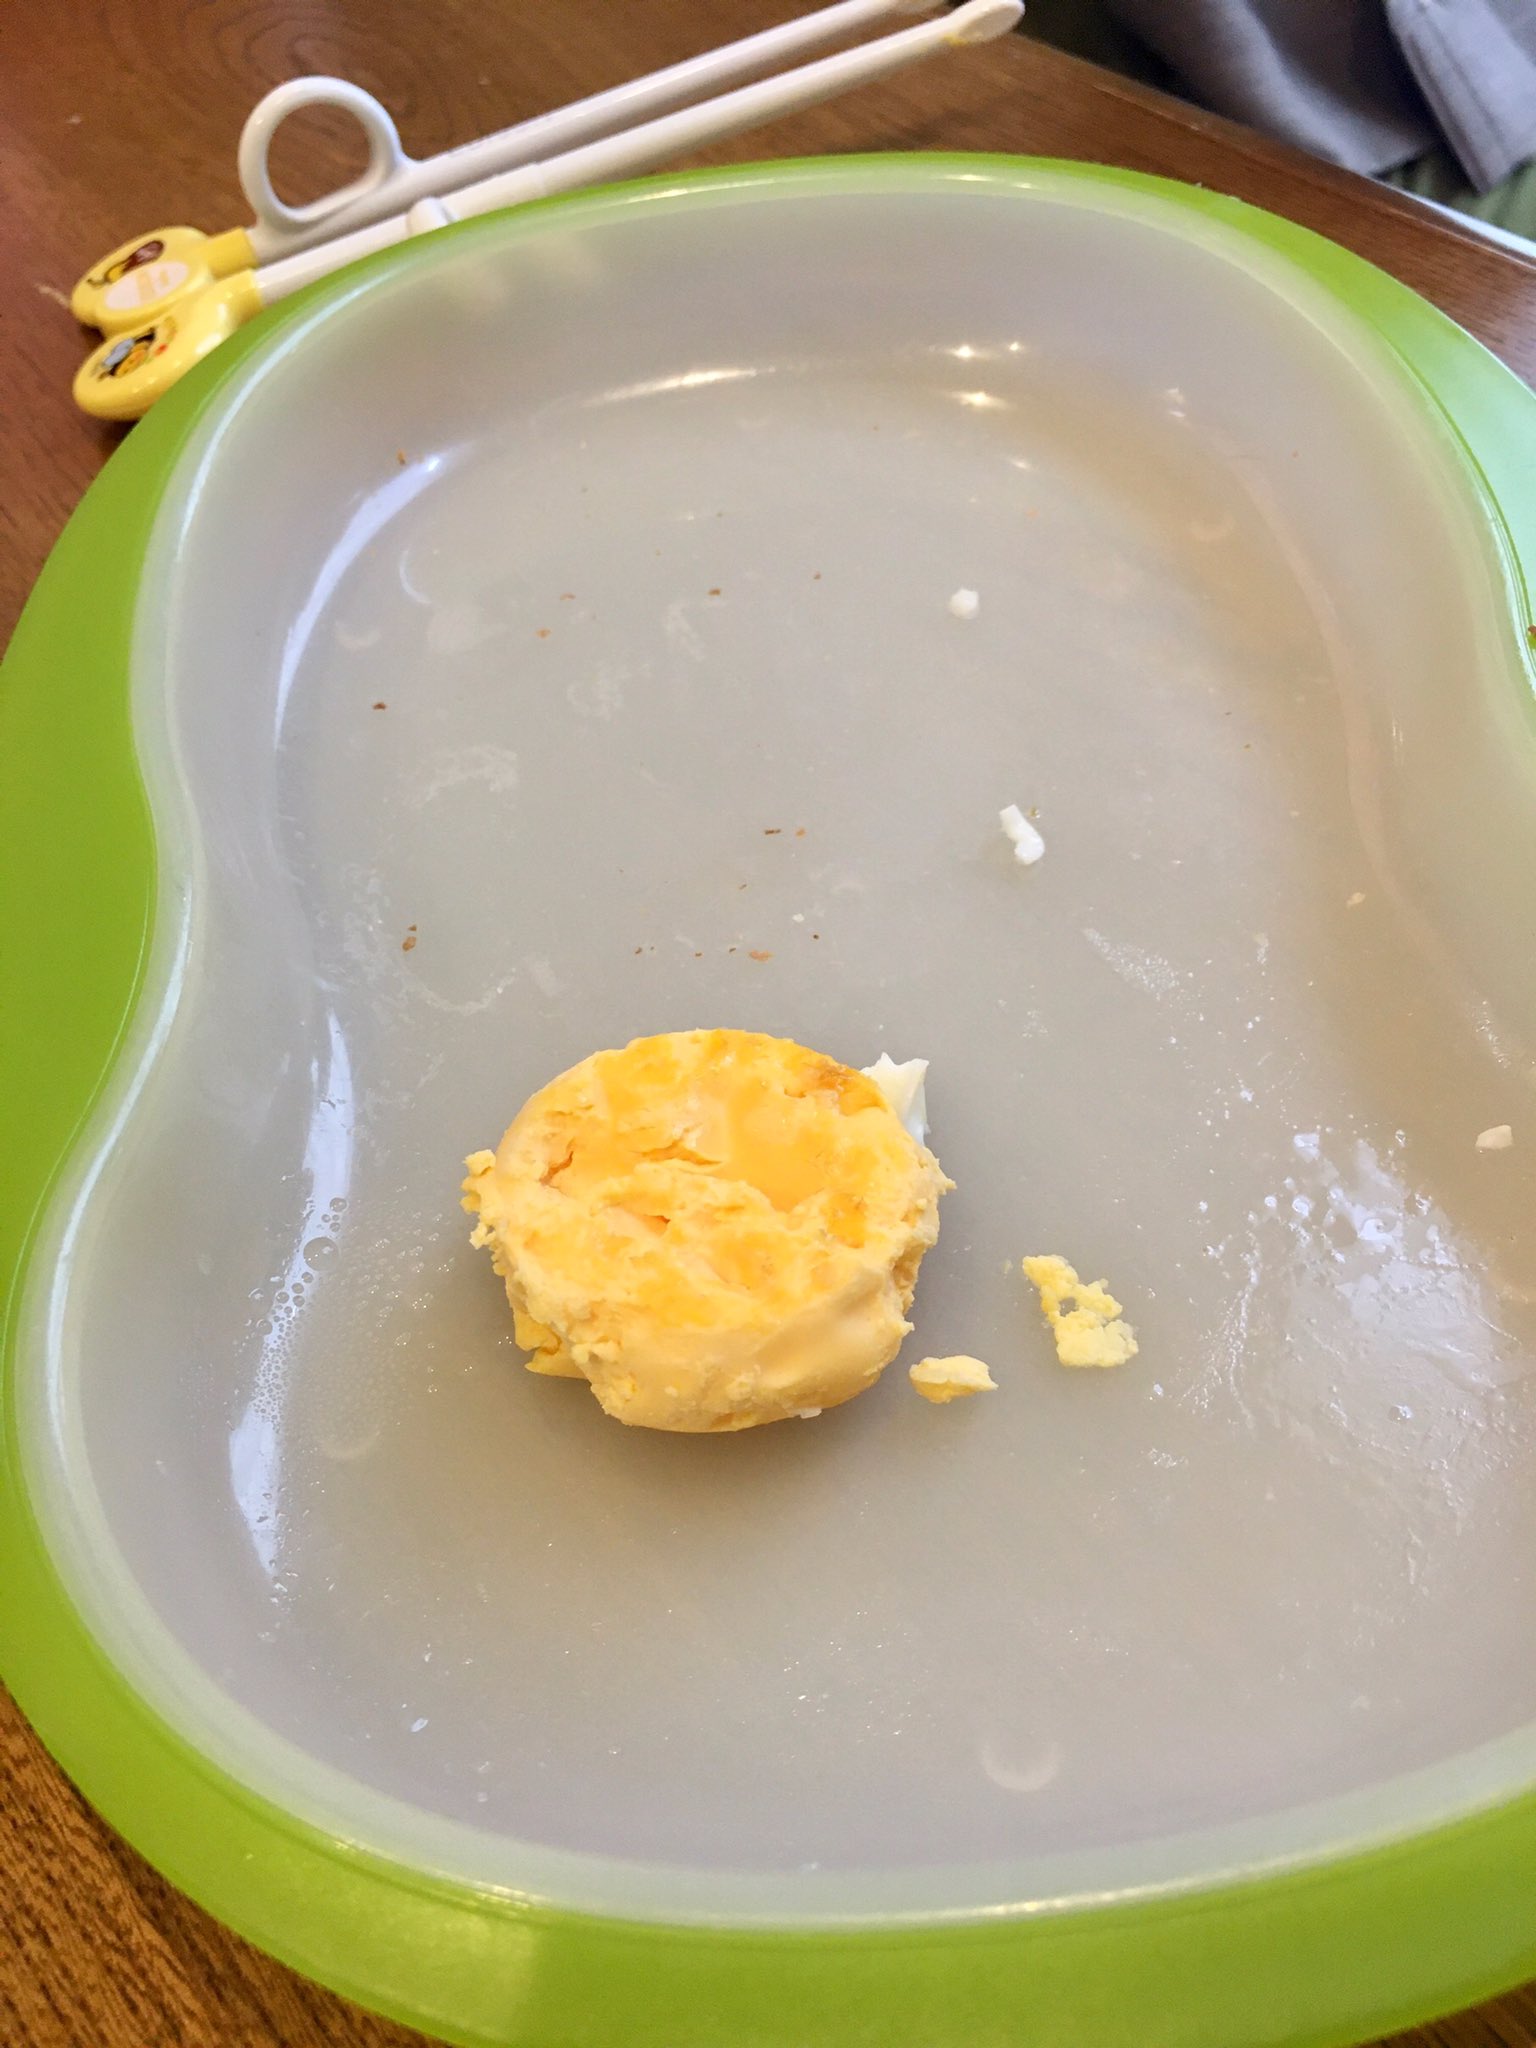 みやぎ ４歳児氏 目玉焼きは白身ばっかり食べる 黄身を絶対に食べないなら最初から出さないんだけど たまに食べる 玉子焼きにすれば全部食べるんだけど 私が圧倒的目玉焼き派なのと面倒なのでつい目玉焼きにしちゃう で こうなる T Co